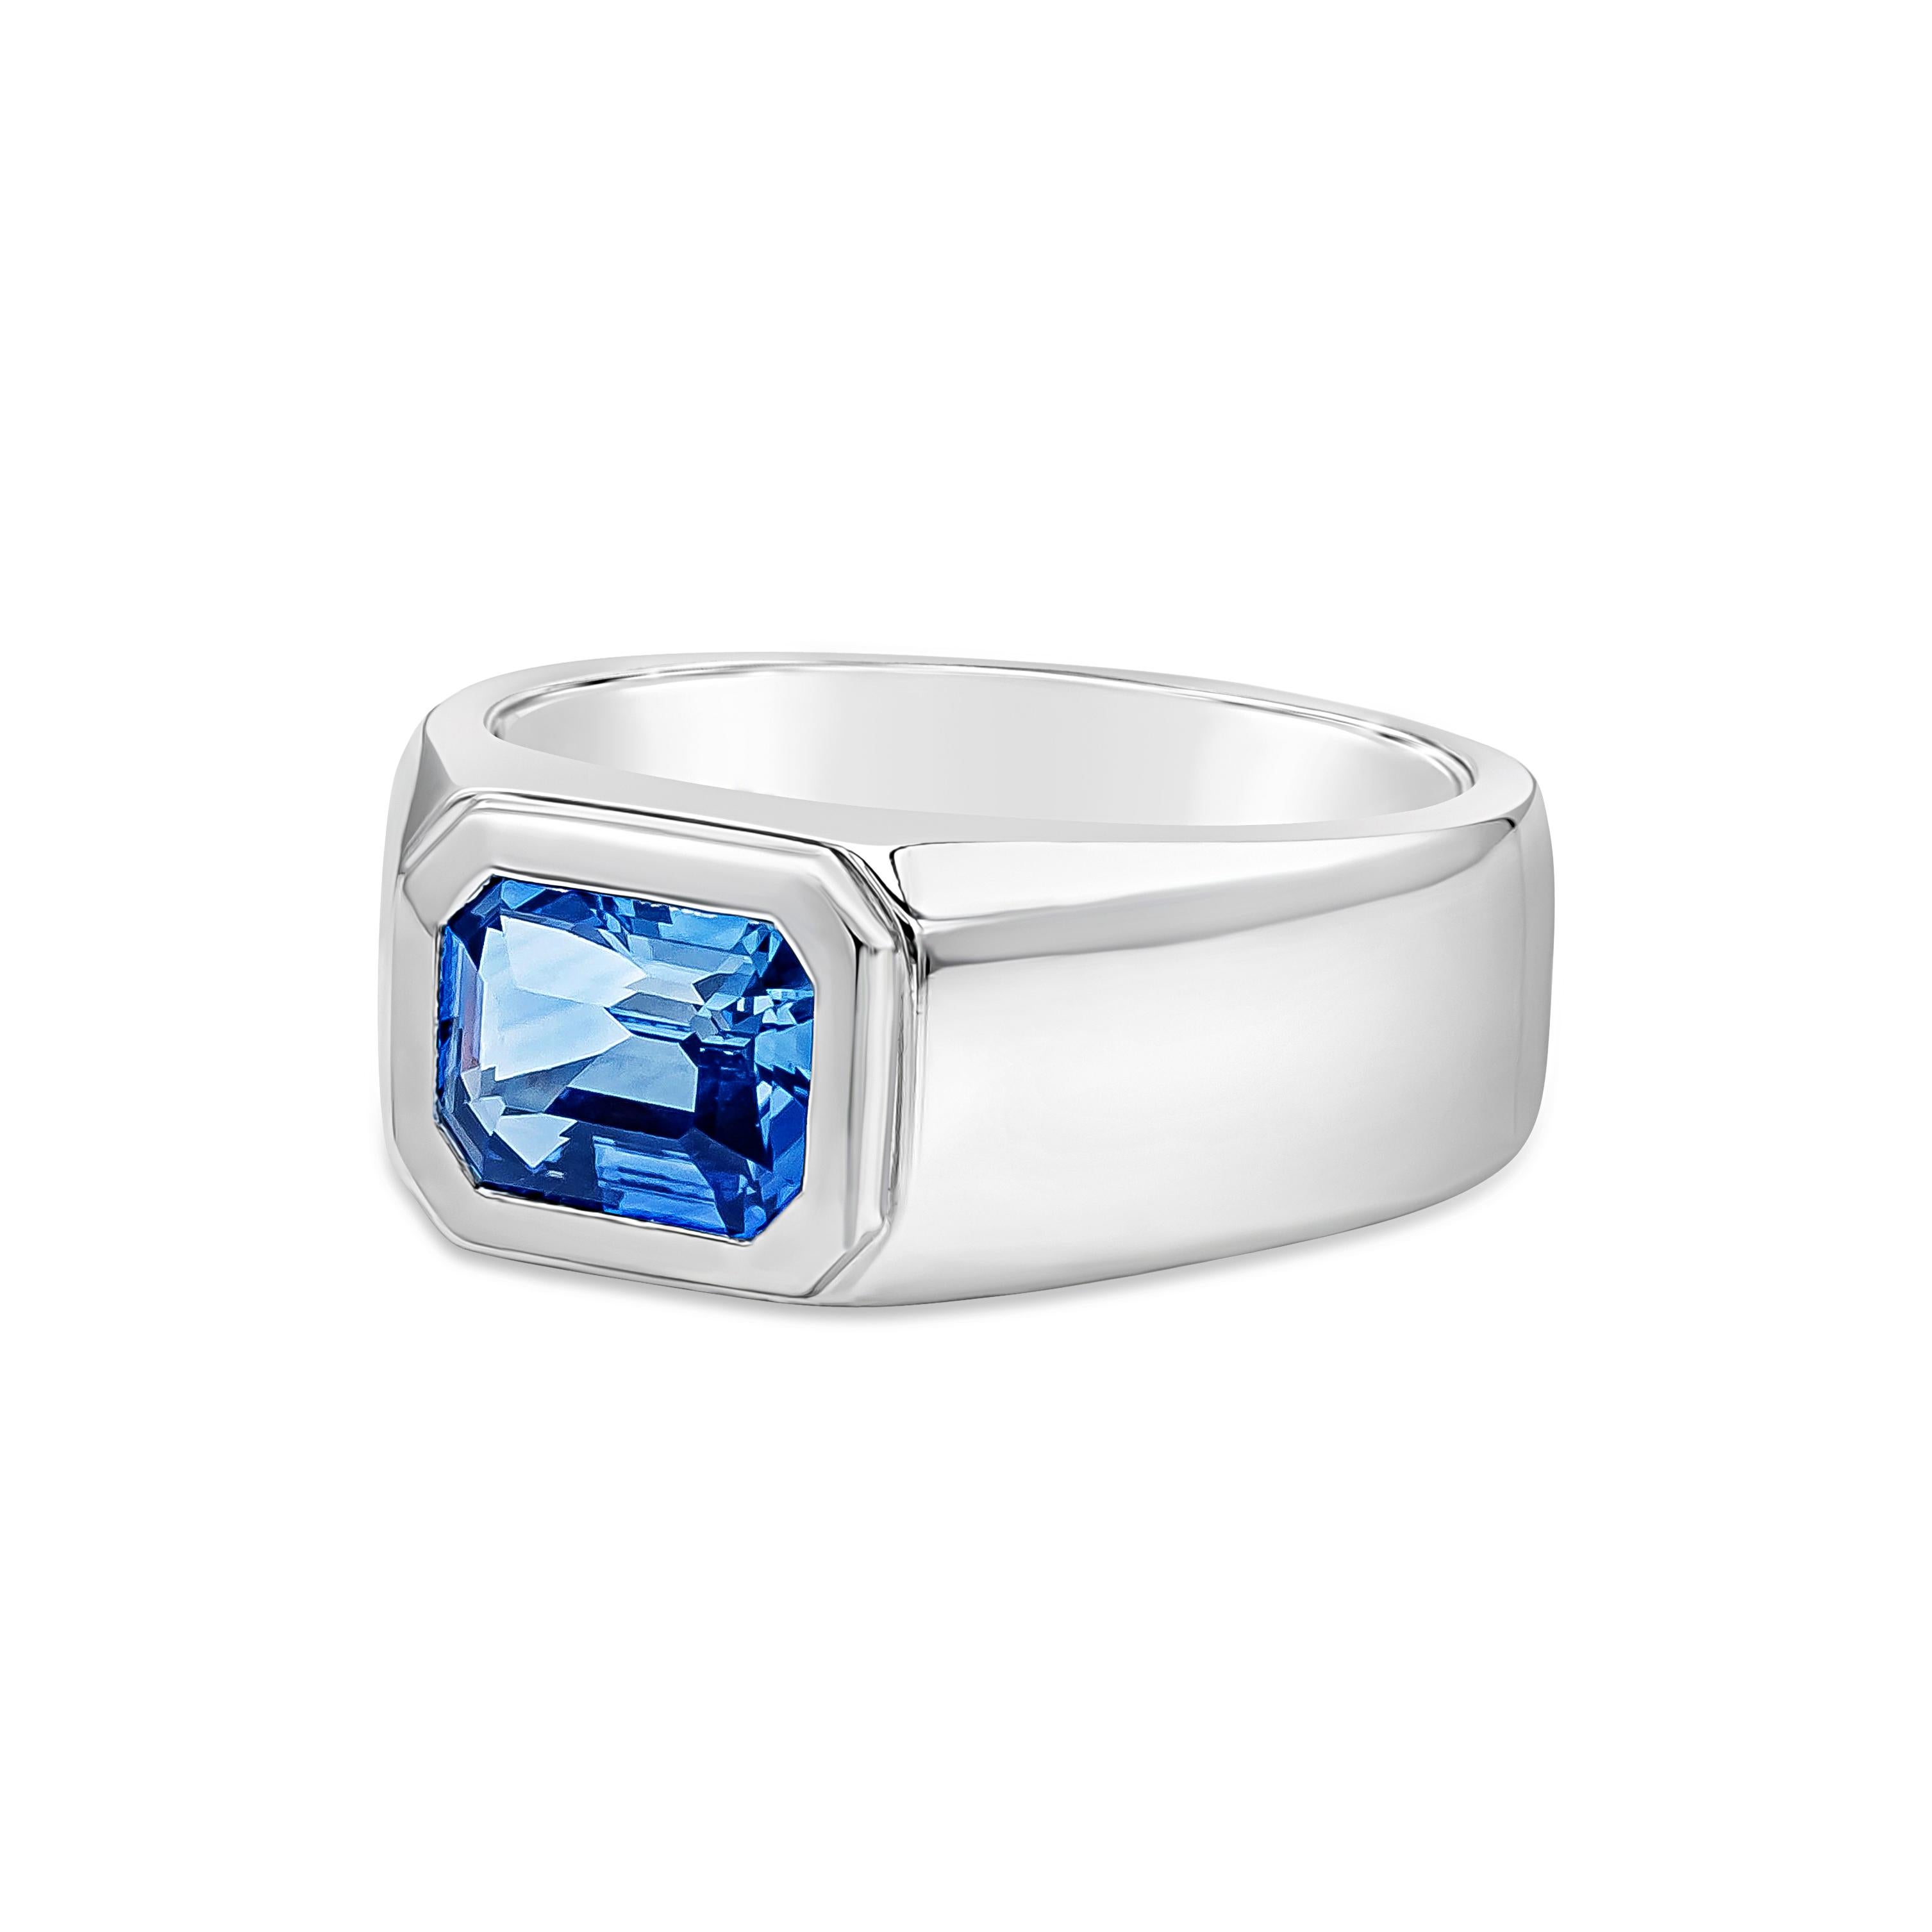 Ein eleganter Ehering für Männer mit einem erstaunlichen blauen Saphir im Smaragdschliff von 2,98 Karat, der von GIA zertifiziert wurde und in ein schönes breites Platinband eingefasst ist. Größe 10

Roman Malakov ist ein Unternehmen, das sich